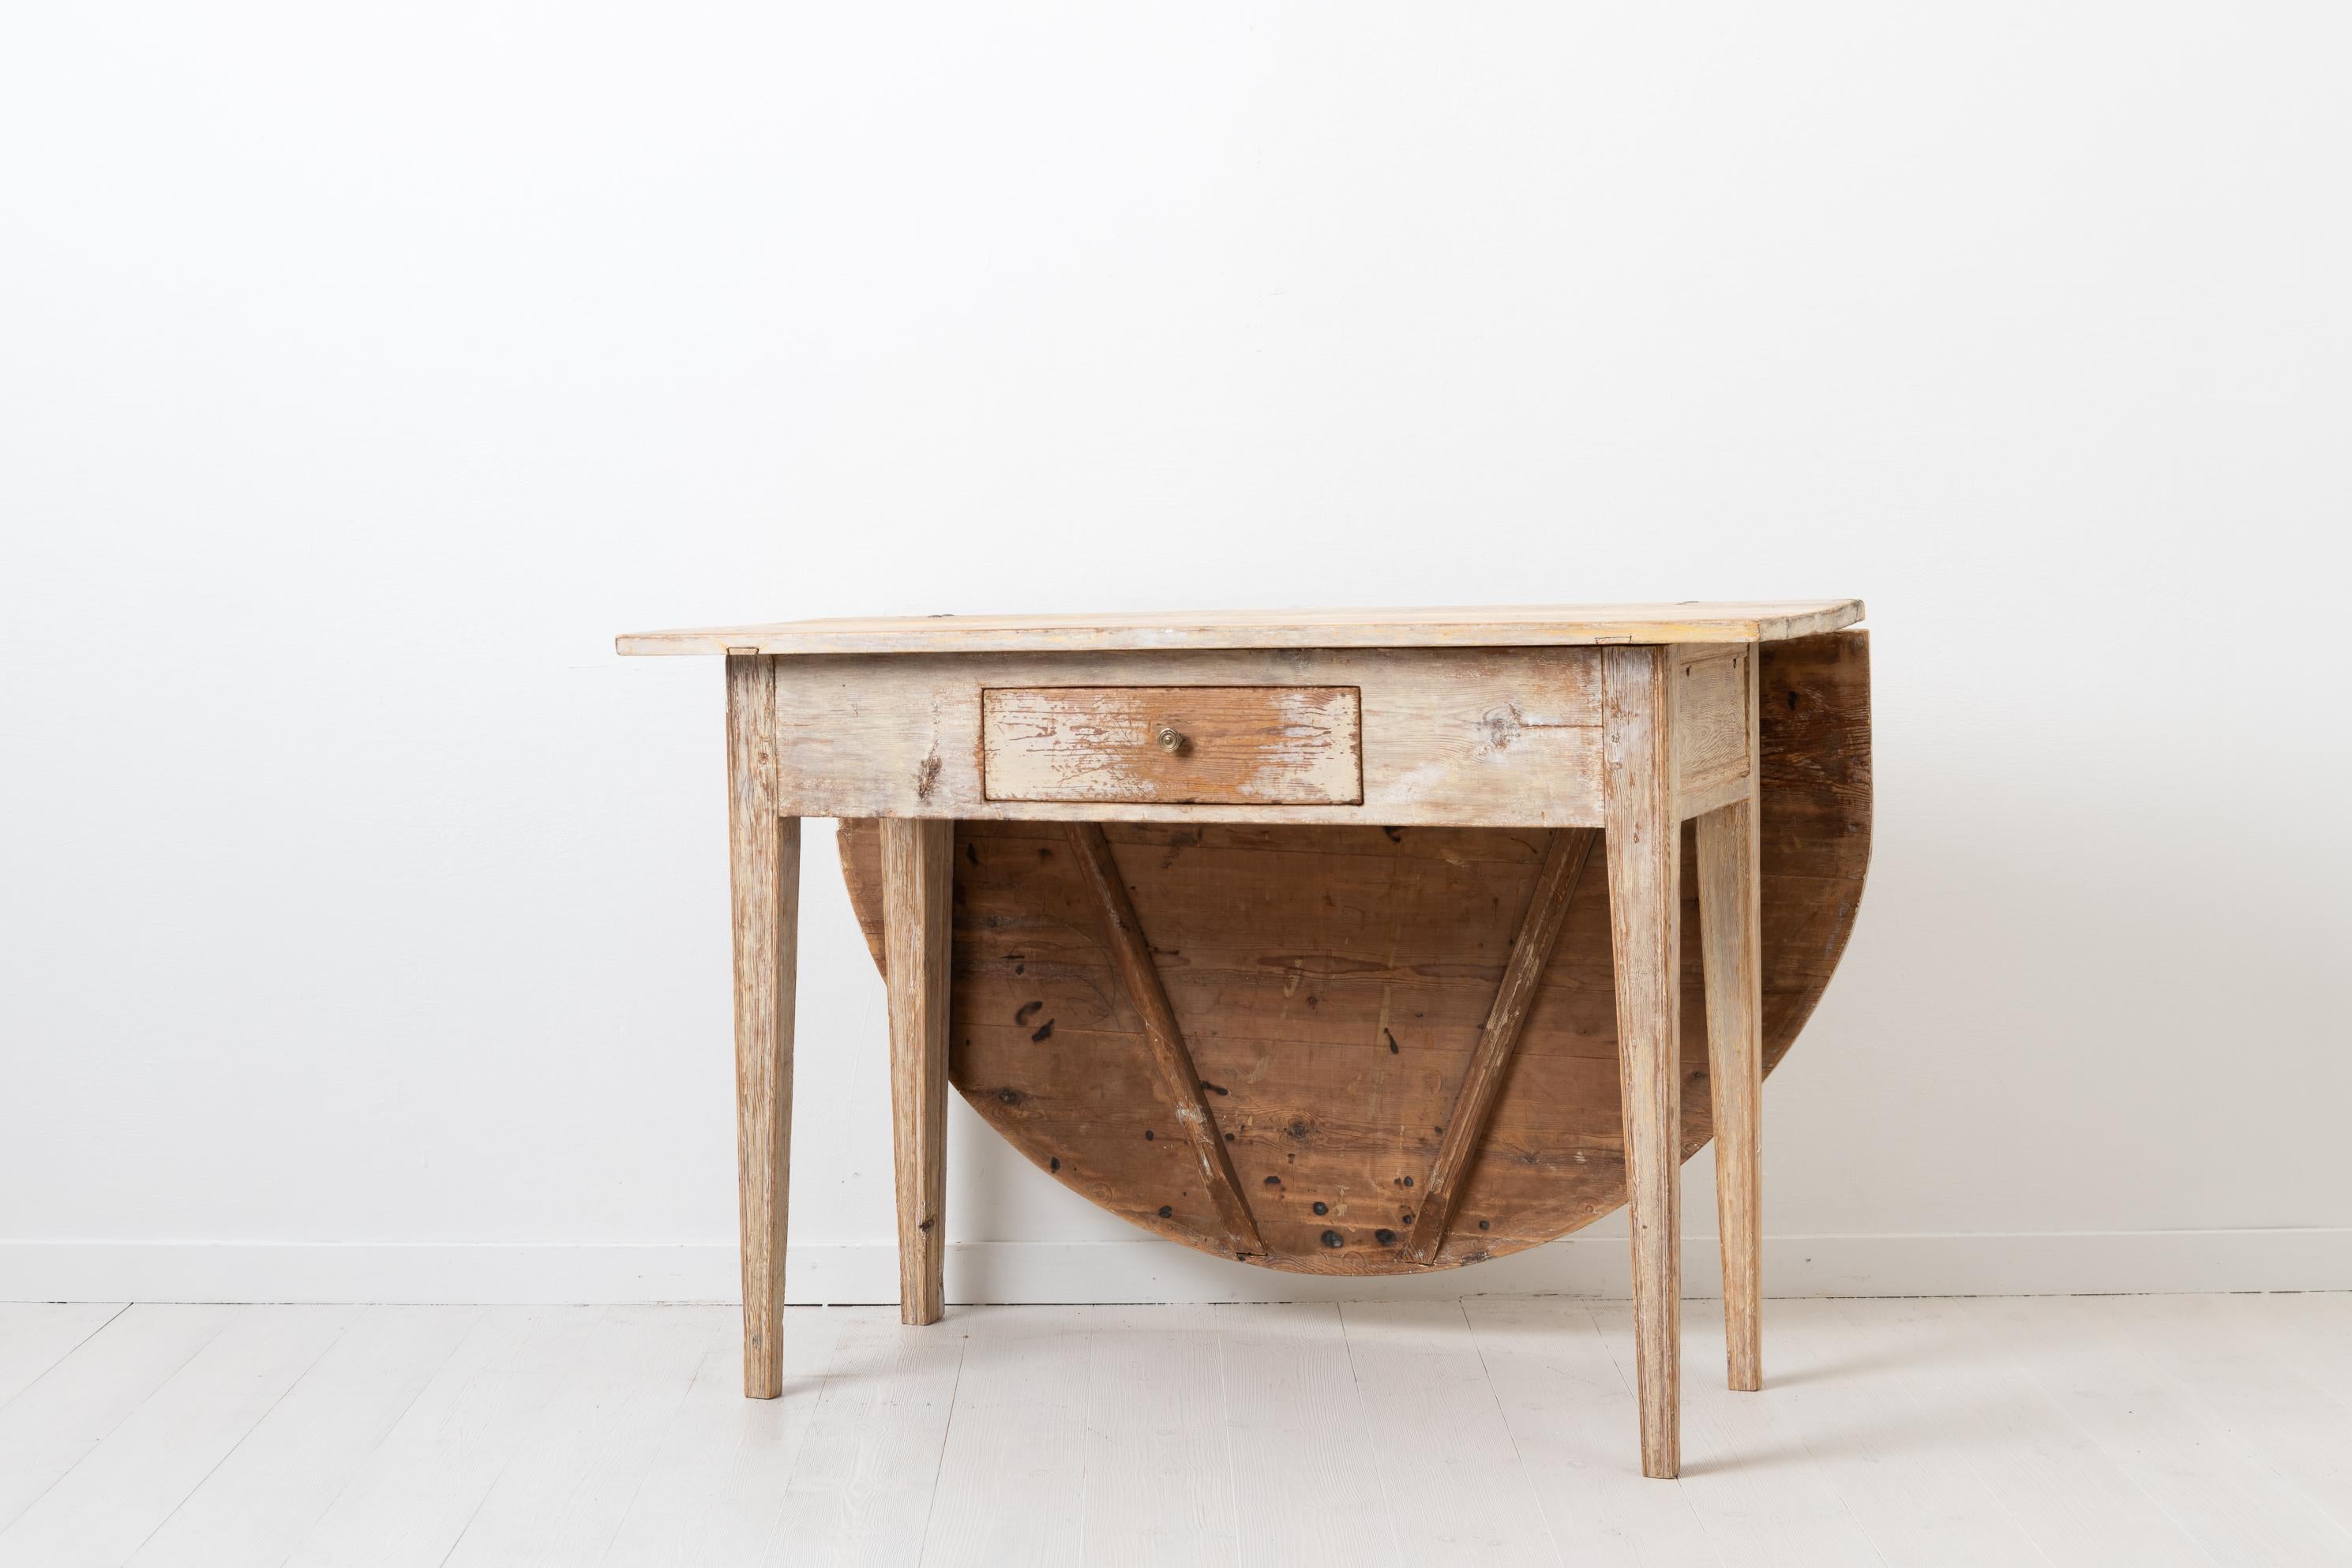 Weißer Gustavianischer Tisch, hergestellt in Nordschweden zwischen 1790 und 1810. Der Tisch ist ein frühes Beispiel für kompaktes Wohnen, bei dem ein Gegenstand mehrere Verwendungsmöglichkeiten hat. Dieser Tisch hat eine klappbare Tischplatte und